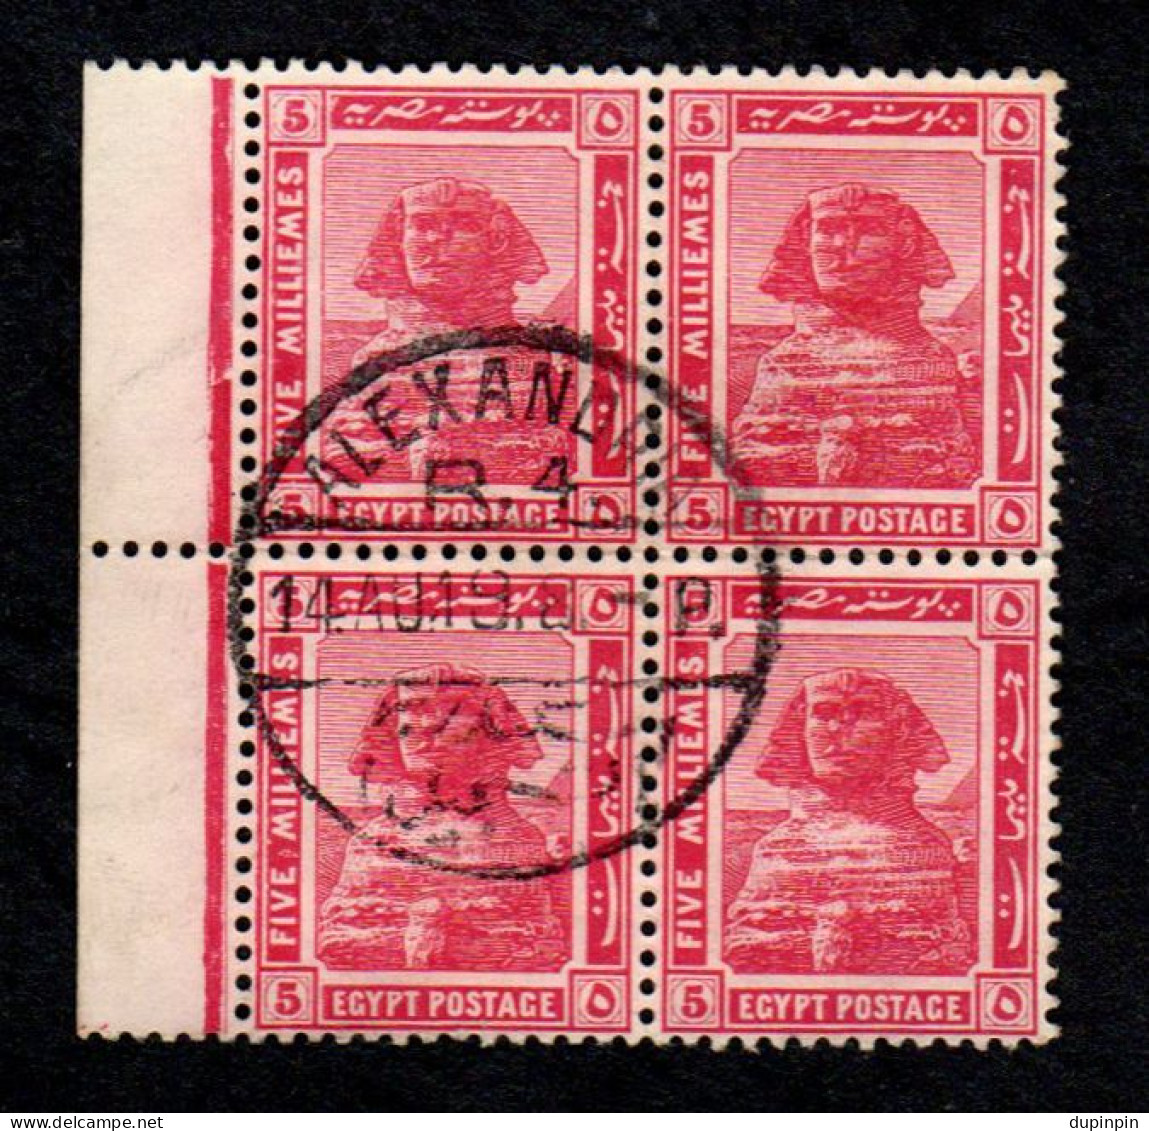 Bloc De 4 Valeurs - 5 FIVE MILLIEMES 1914 EGYPTE - 1915-1921 British Protectorate